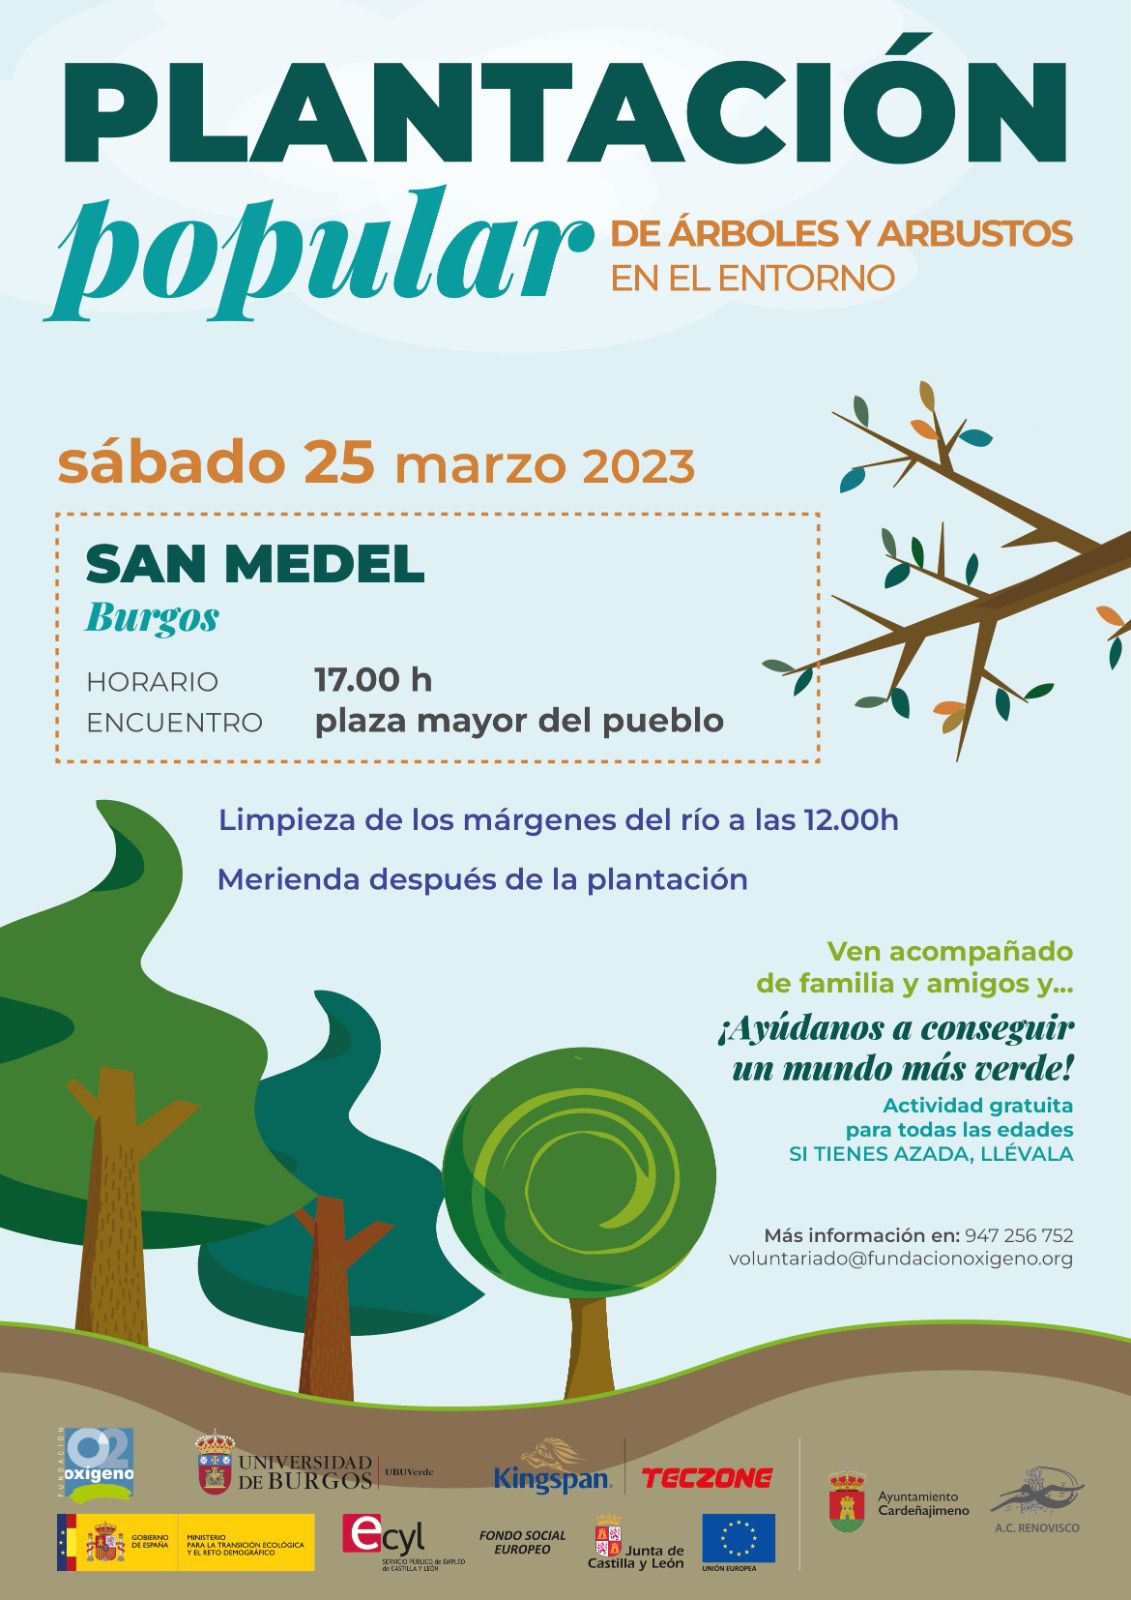 PLANTACION POPULAR EN SAN MEDEL - SÁBADO 25 DE MARZO DE 2023.